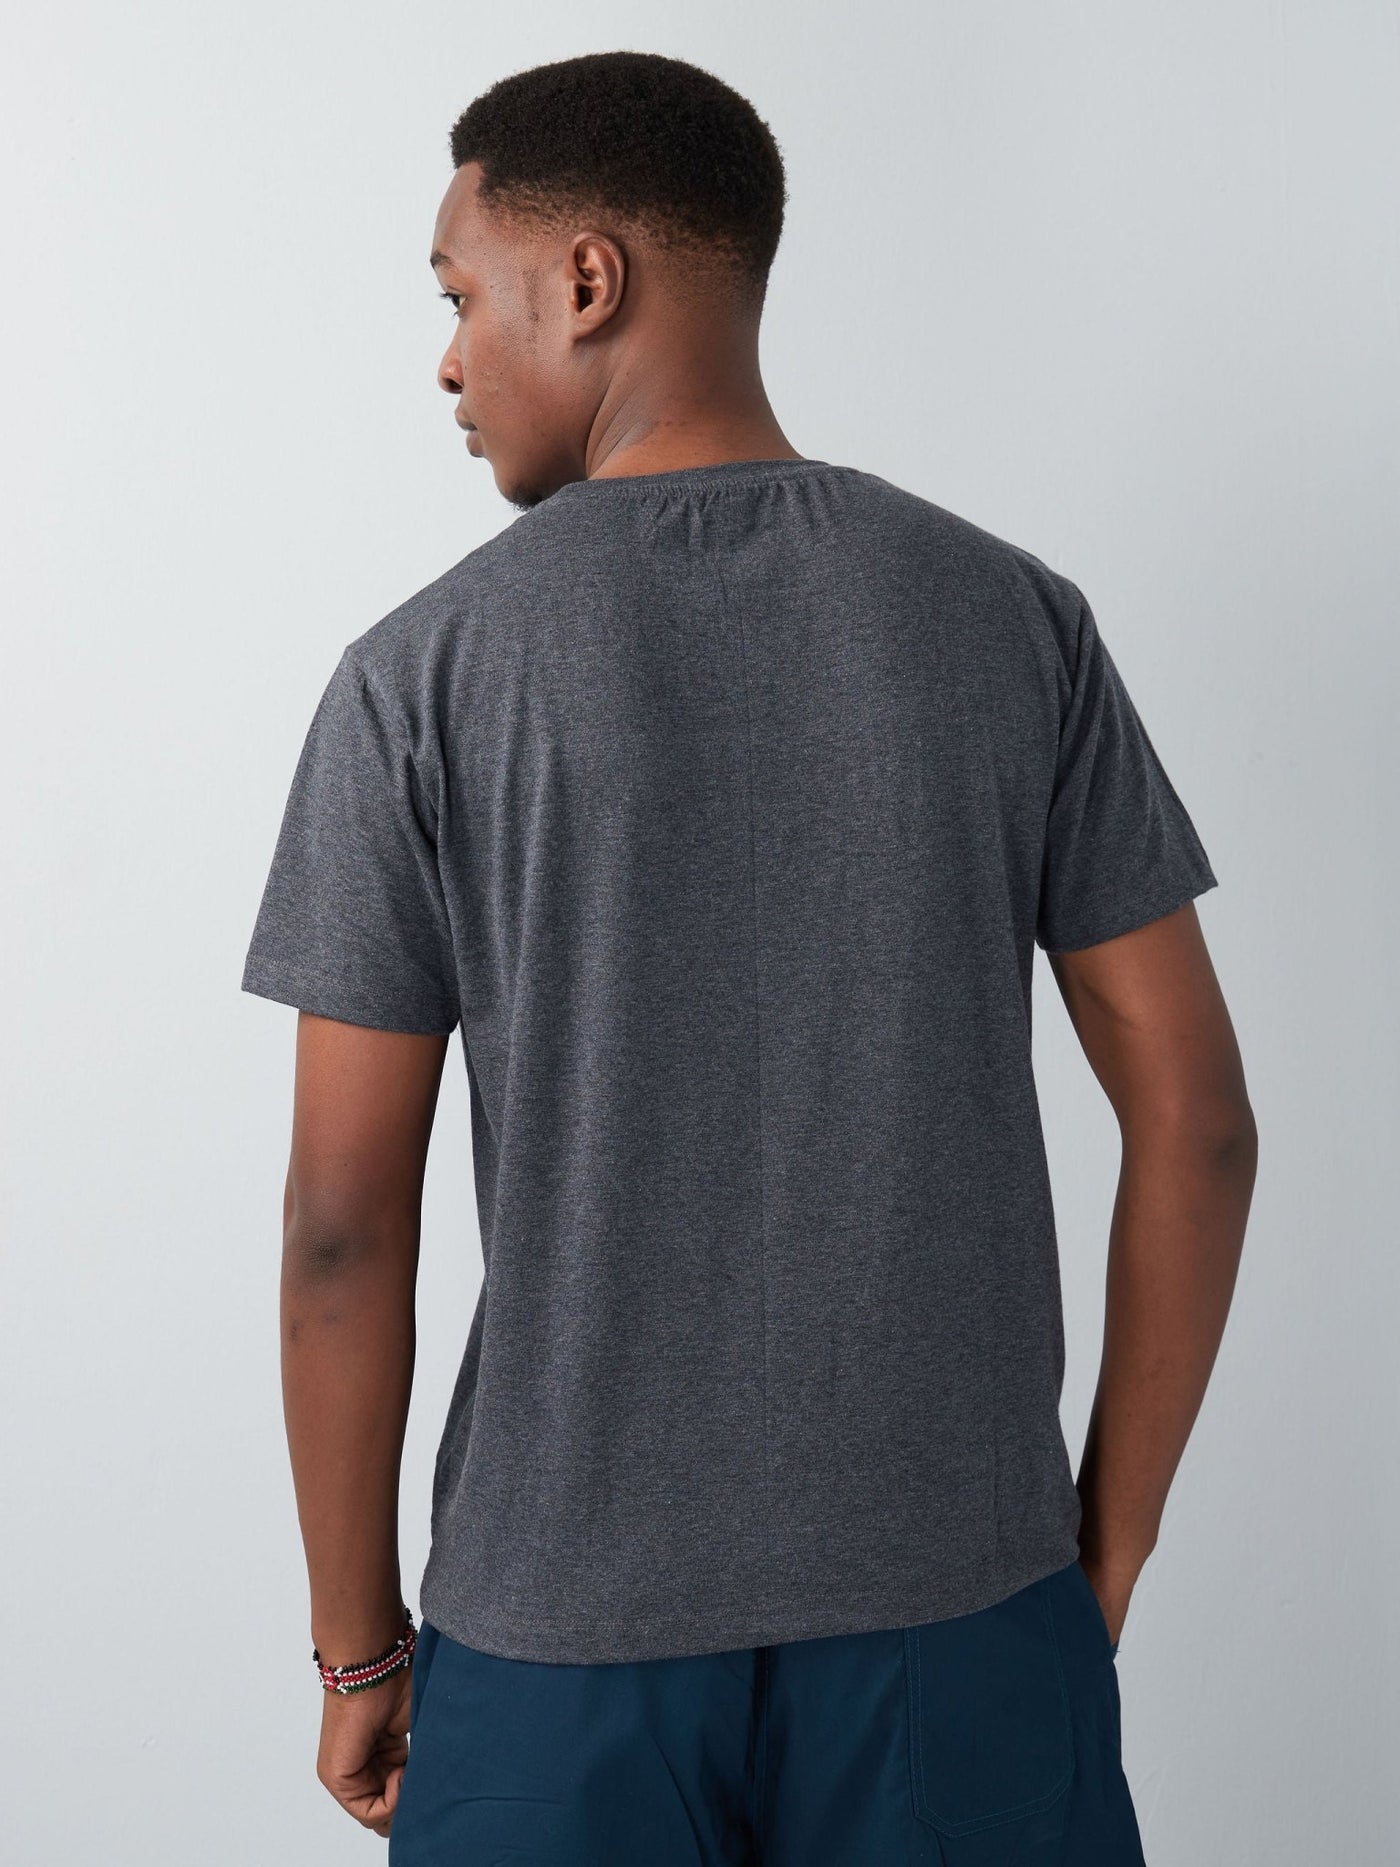 King's Collection Unisex Round Neck T-shirt - Dark Grey - Shopzetu